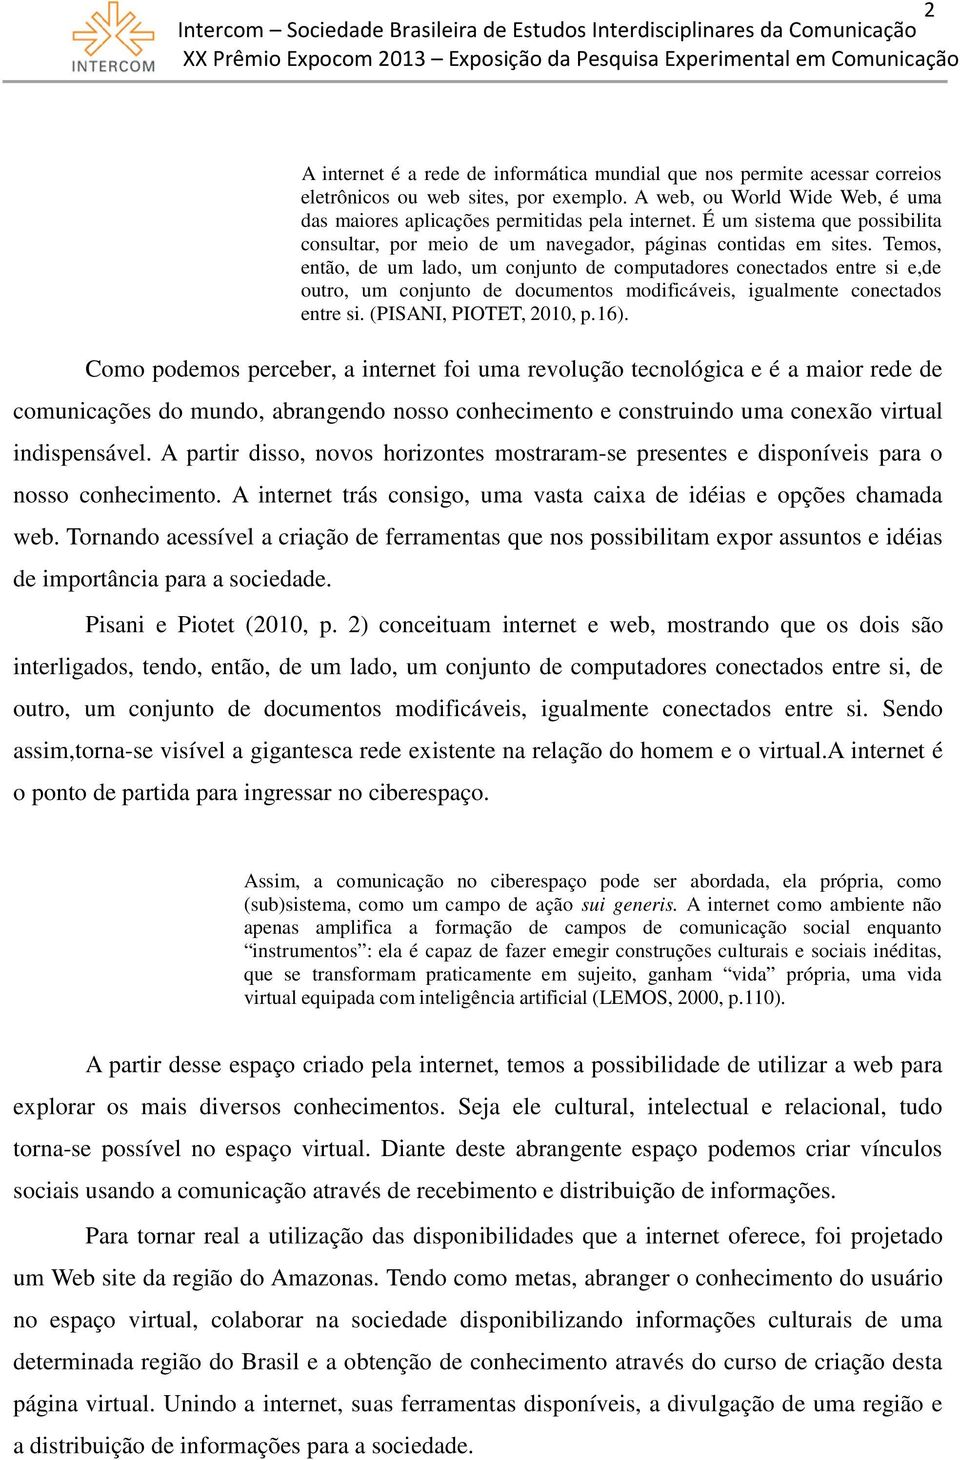 Temos, então, de um lado, um conjunto de computadores conectados entre si e,de outro, um conjunto de documentos modificáveis, igualmente conectados entre si. (PISANI, PIOTET, 2010, p.16).